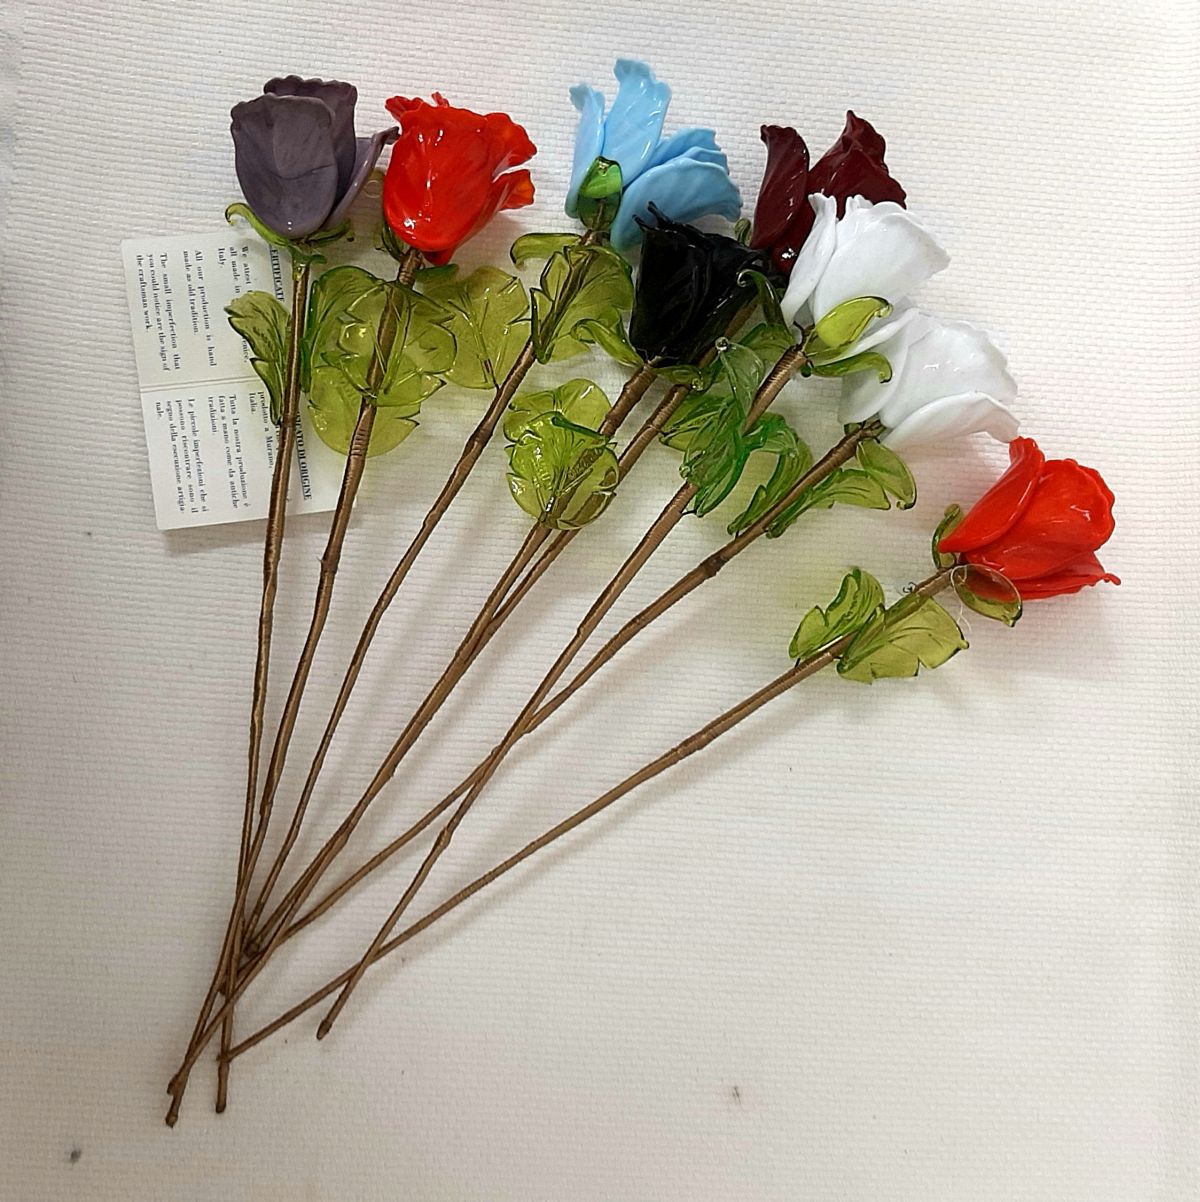 λουλούδια Μουράνο, 25 € το ένα τεμάχιο